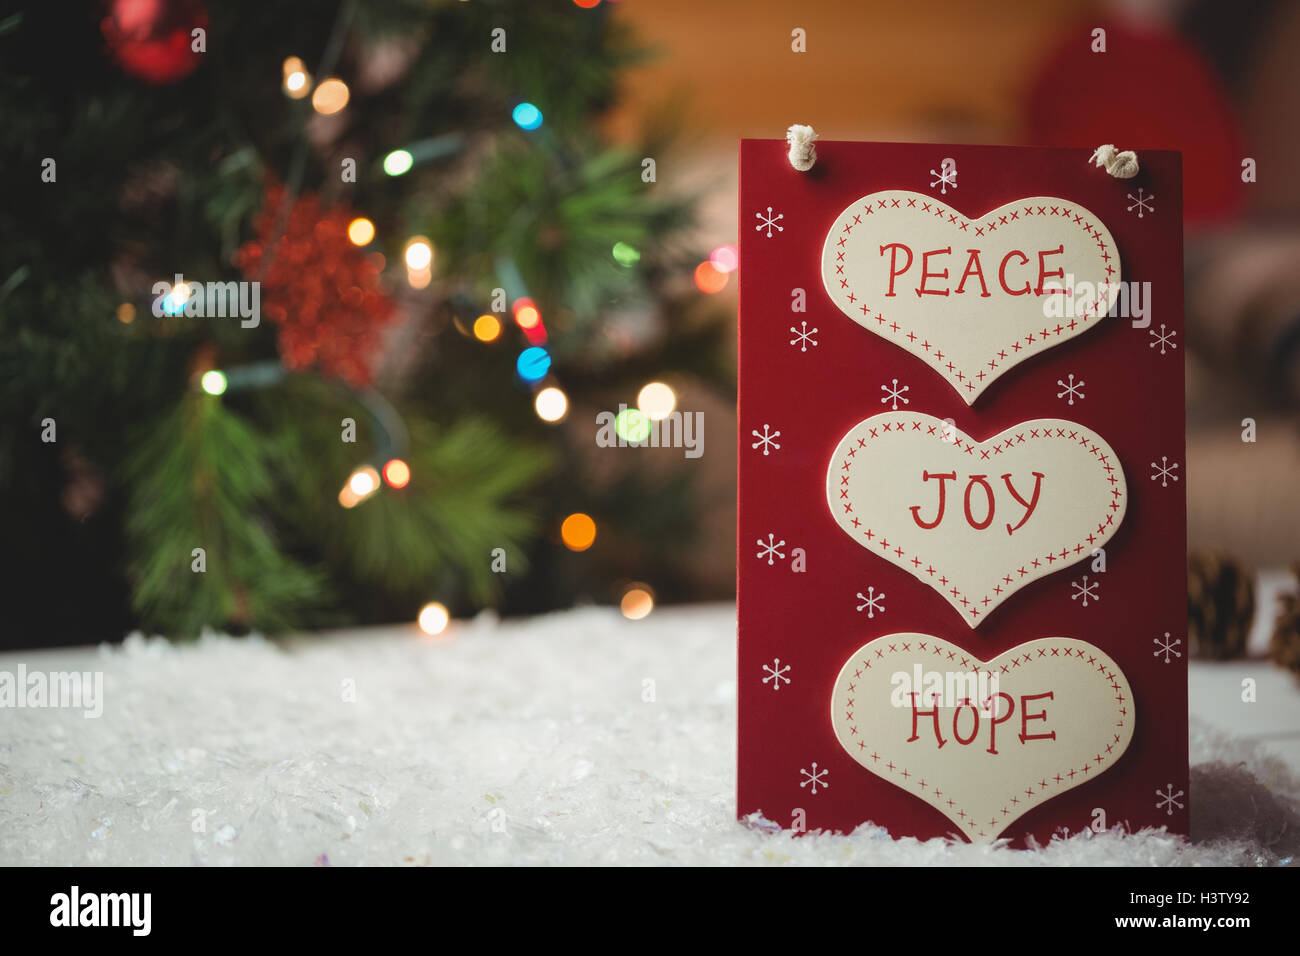 Natale Di Pace.Etichetta Di Natale Con Massaggi Di Pace Di Gioia E Di Speranza Foto Stock Alamy